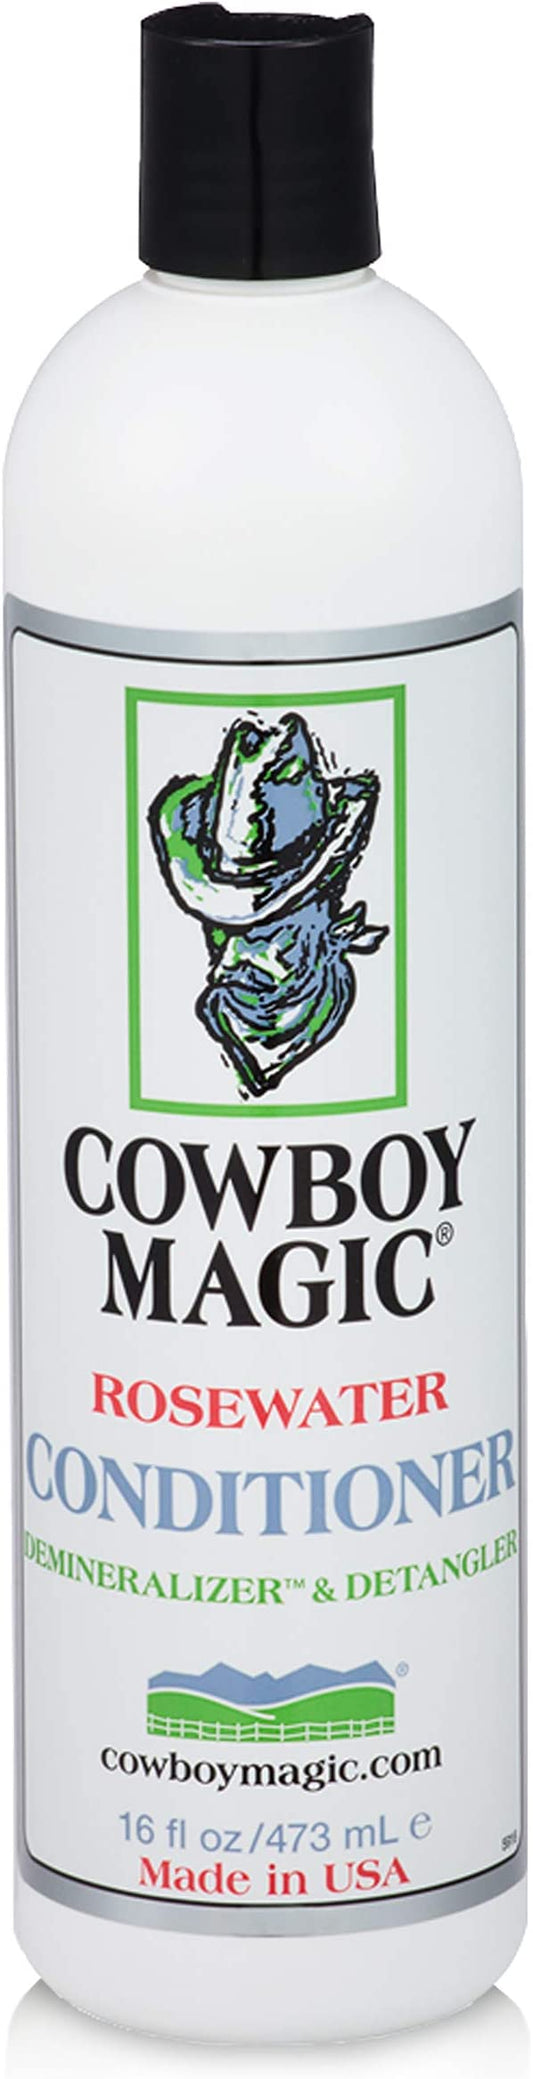 Cowboy Magic Conditioner